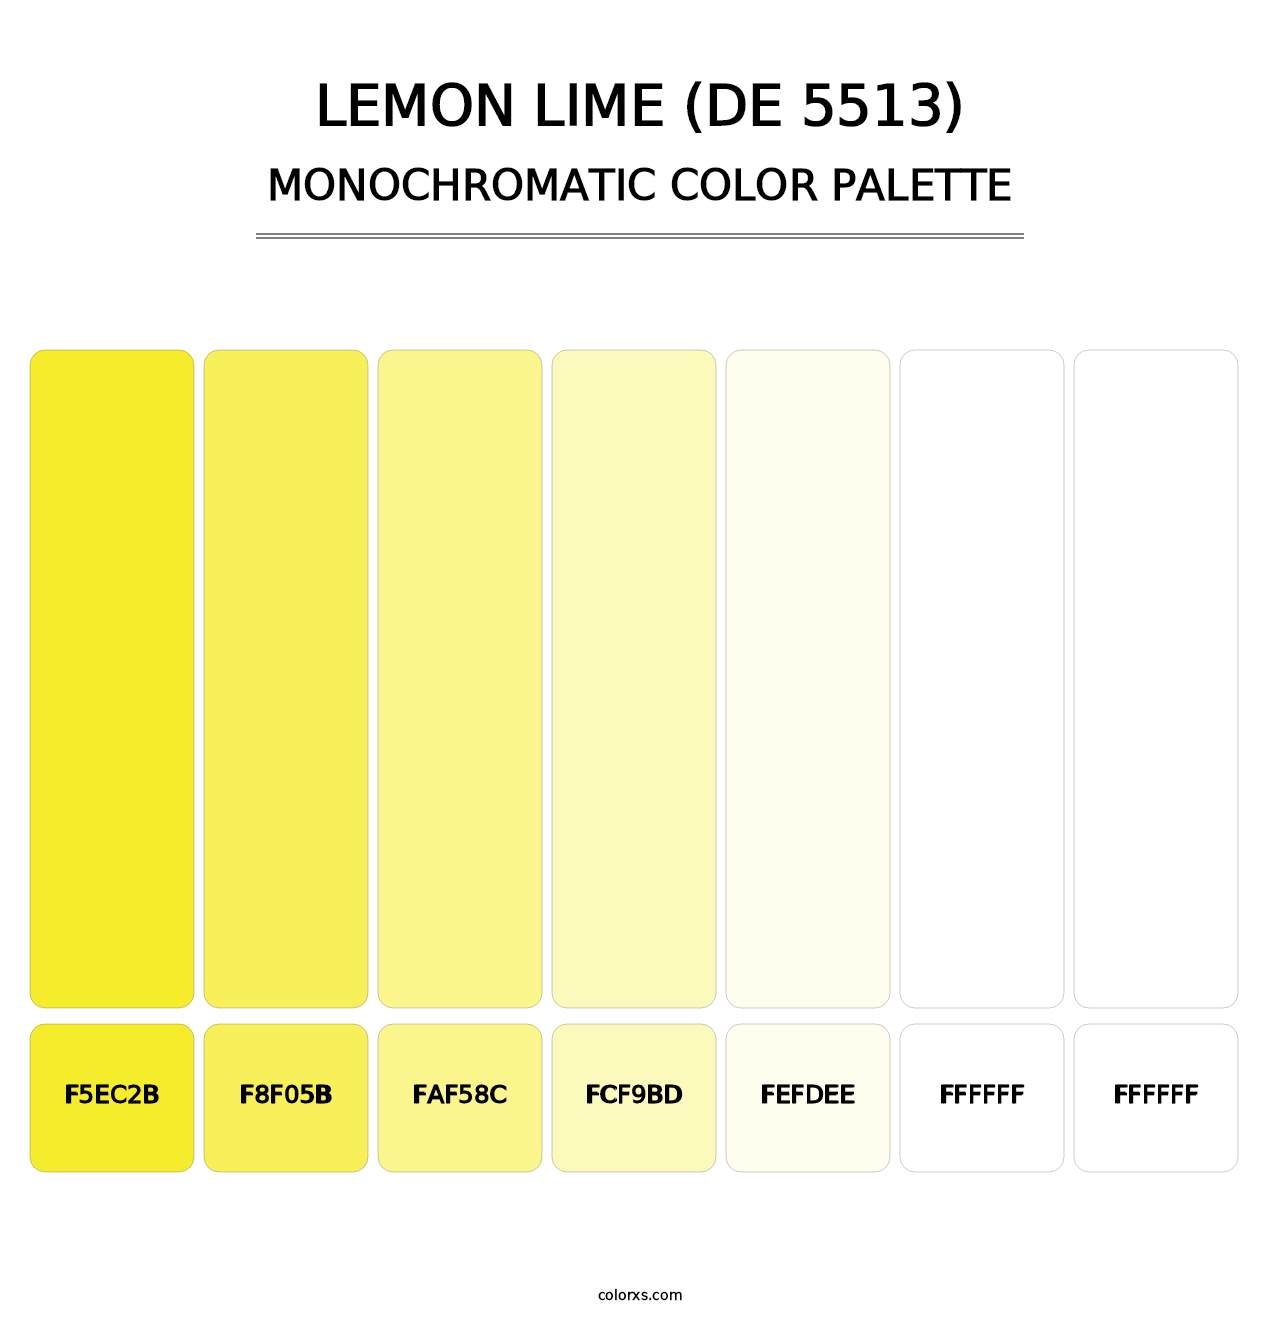 Lemon Lime (DE 5513) - Monochromatic Color Palette